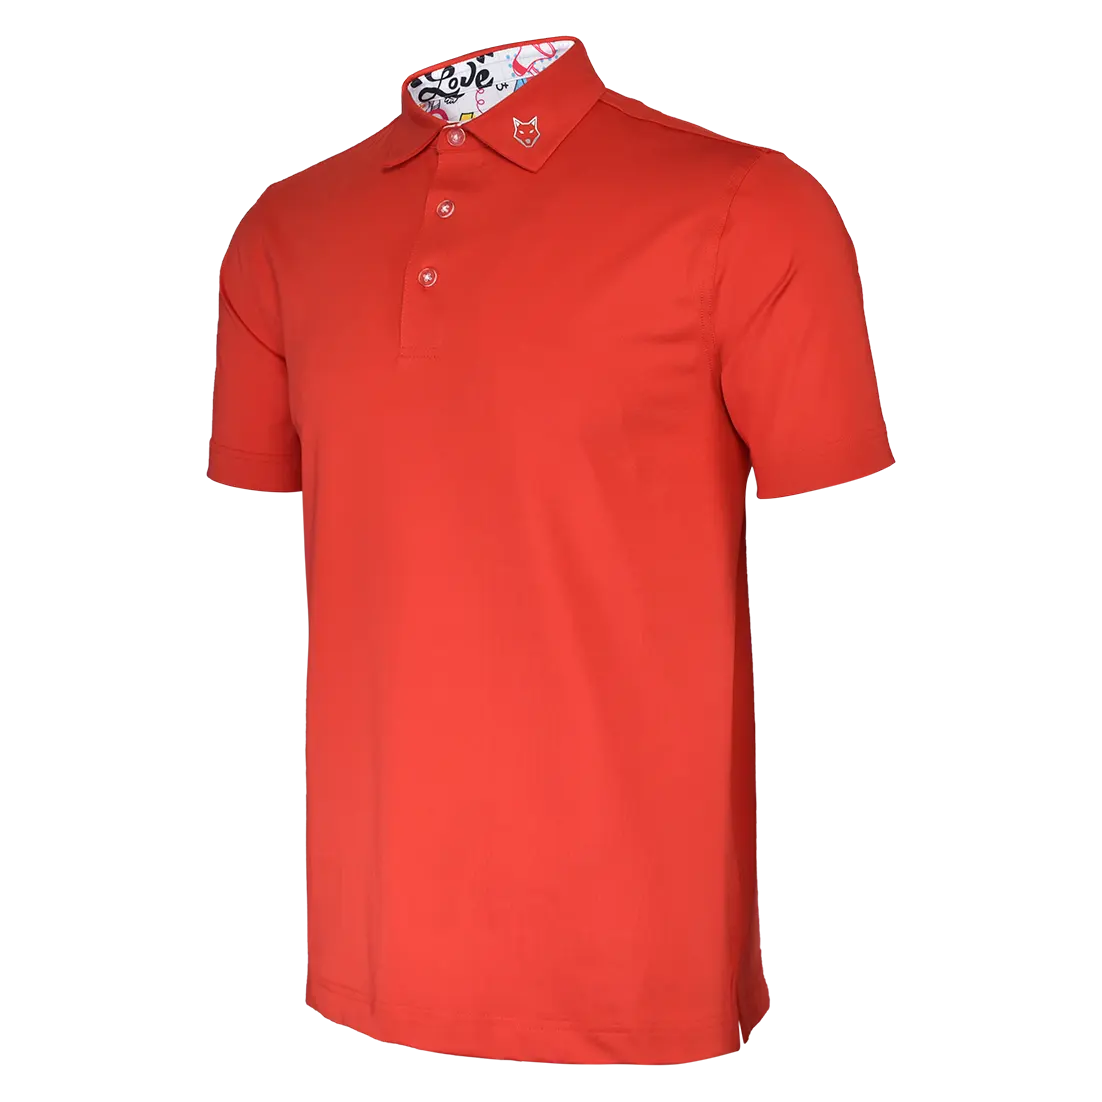 تخفيضات هائلة على قمصان الرجال أمازون ملابس الجولف مع شعار مخصص تصميم سبانديكس بالتصاميم الرياضية للرجال تي شيرت